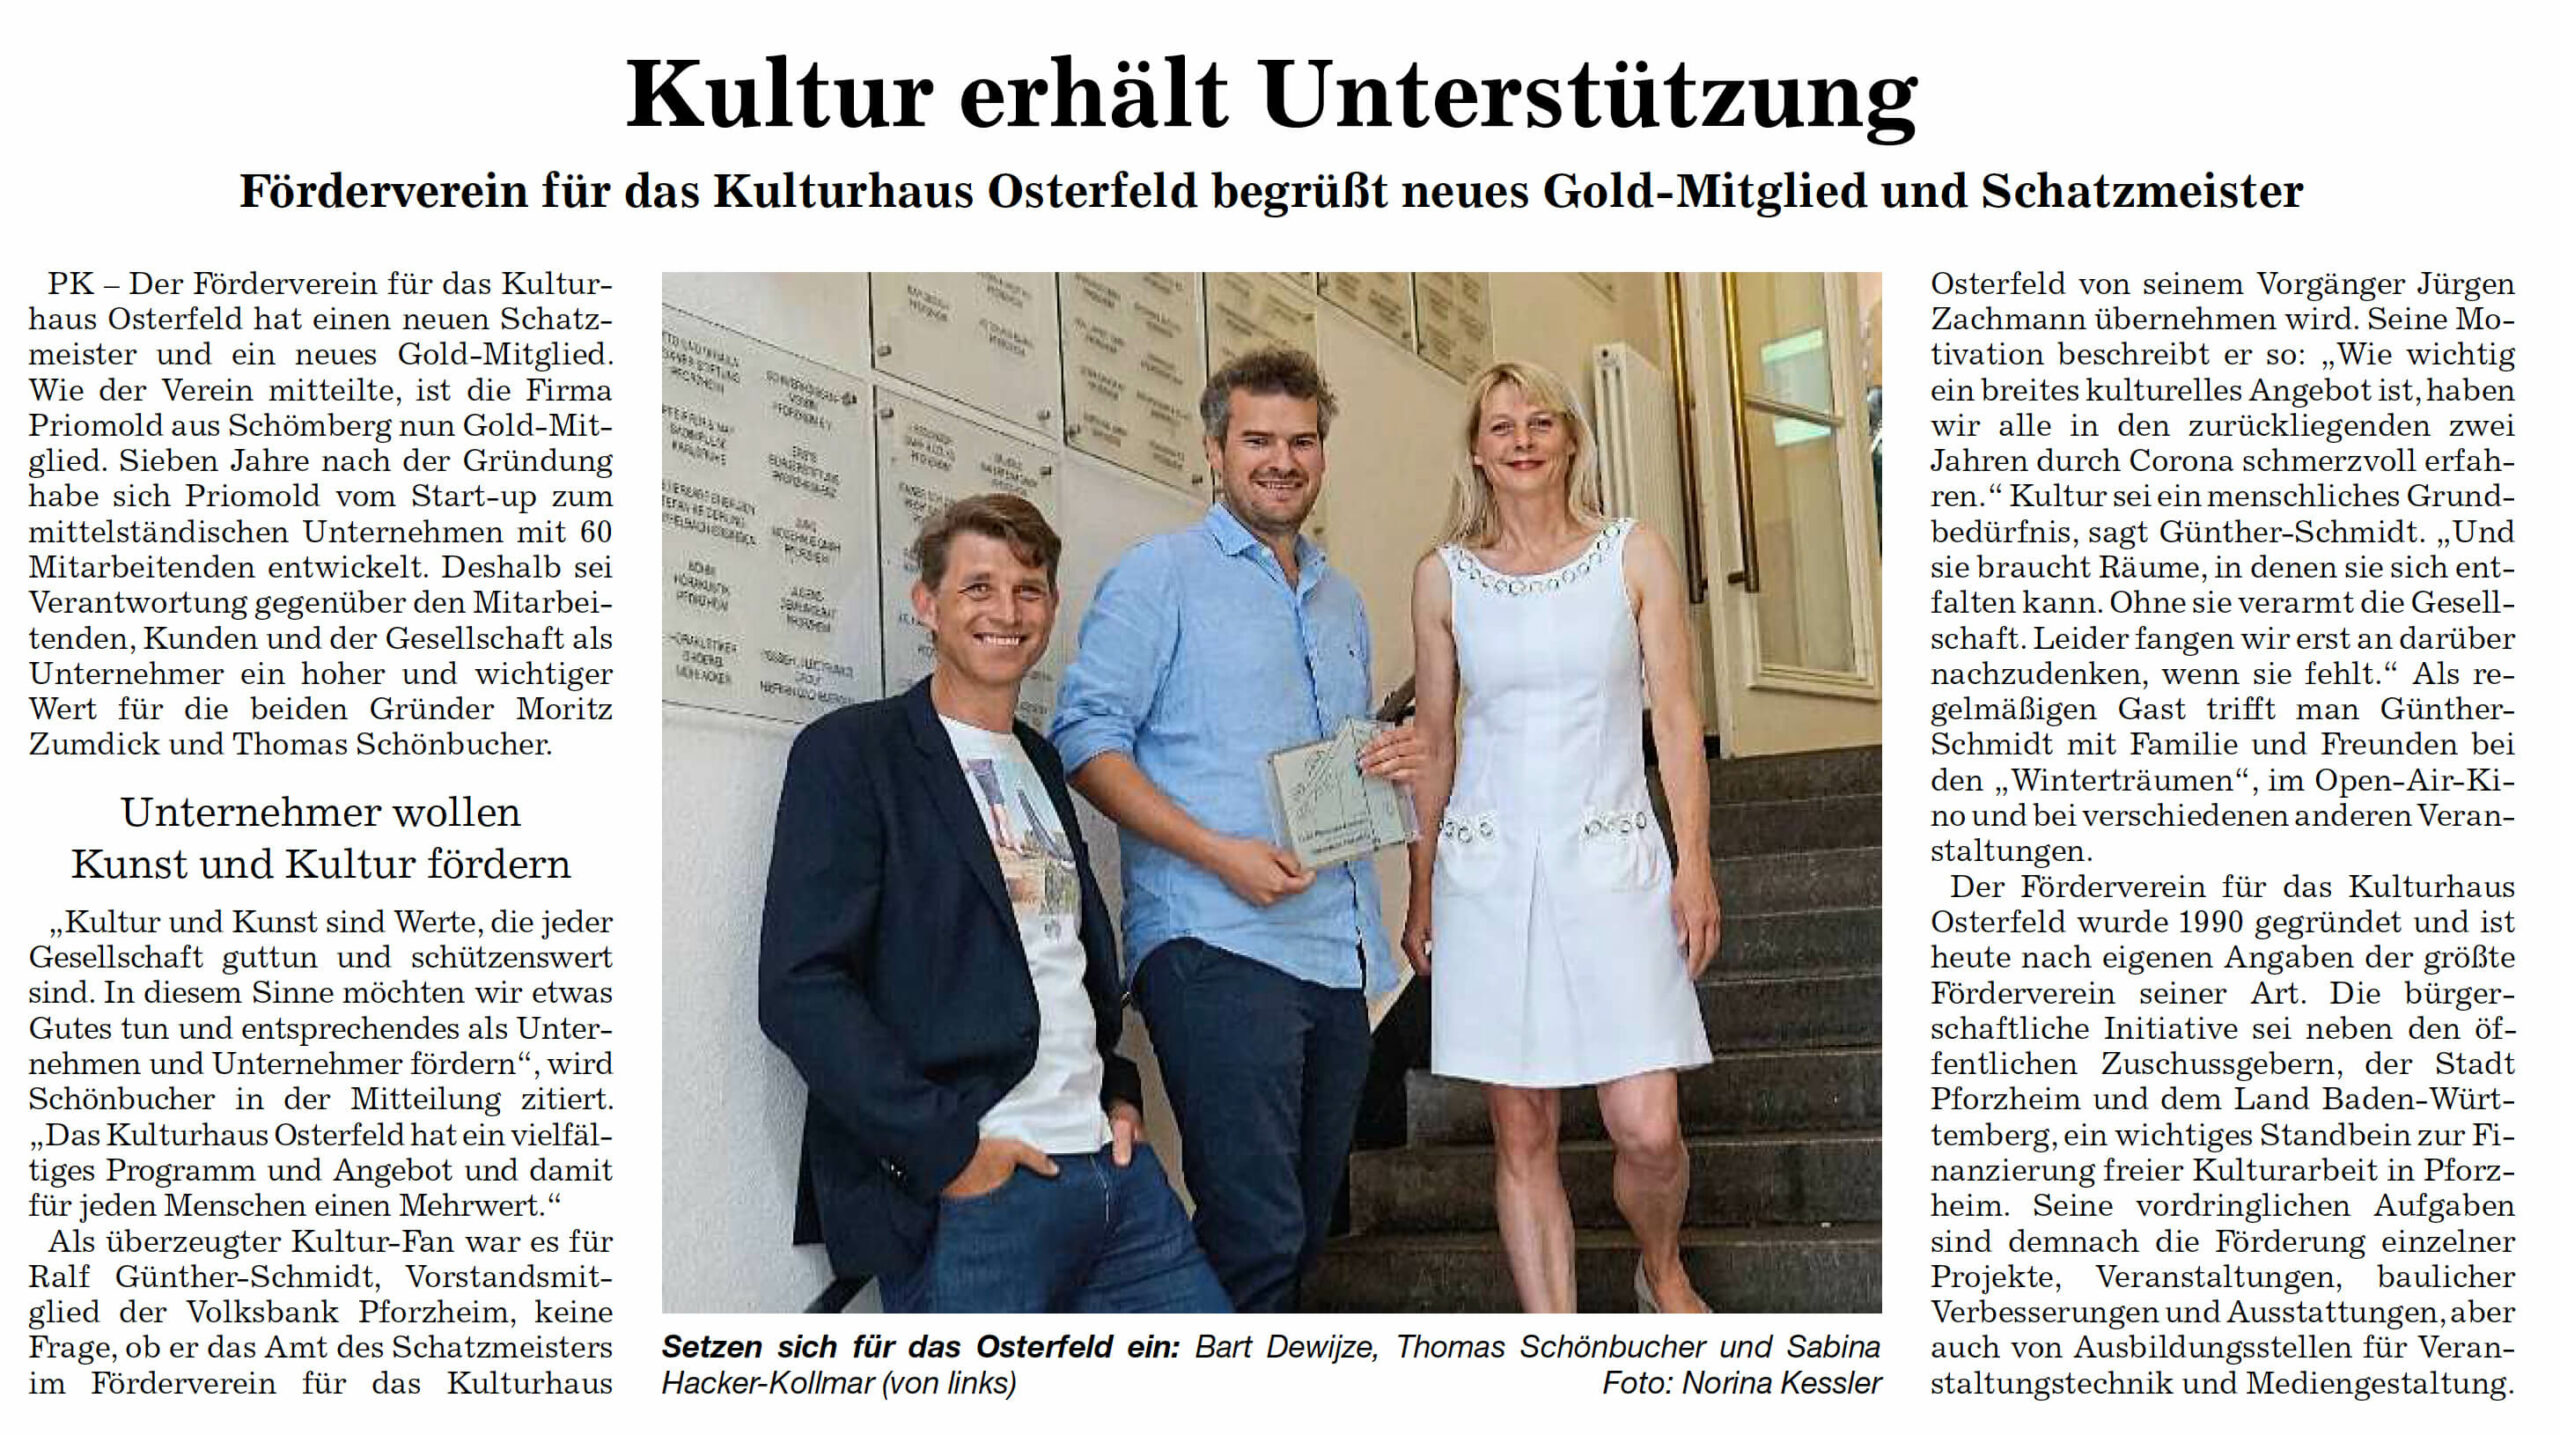 Förderverein Kulturhaus Osterfeld - News - Neues Gold-Mitglied und neuer Schatzmeister